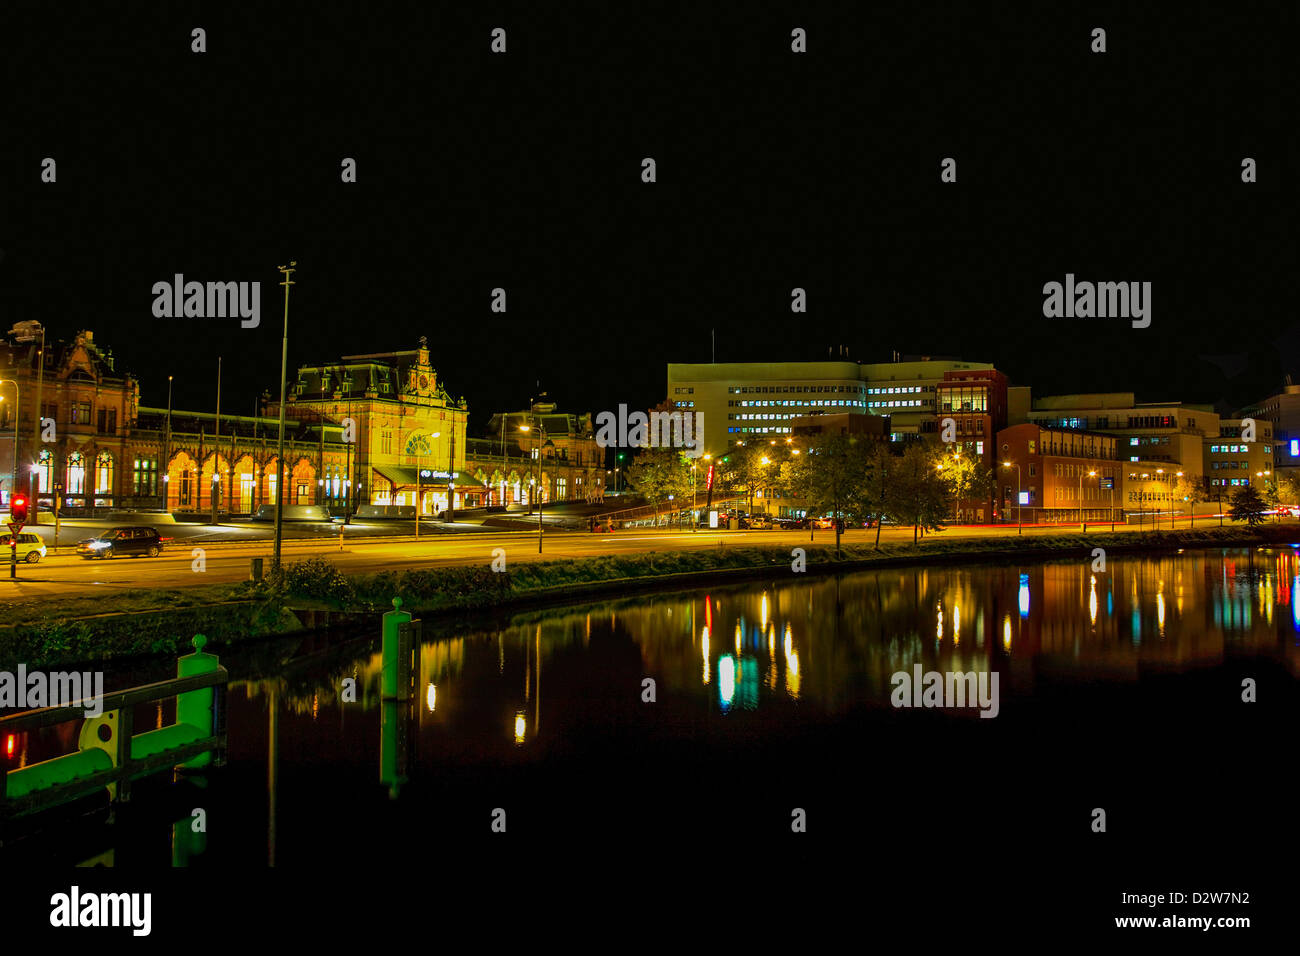 La ville de Groningen aux Pays-Bas dans la nuit Banque D'Images